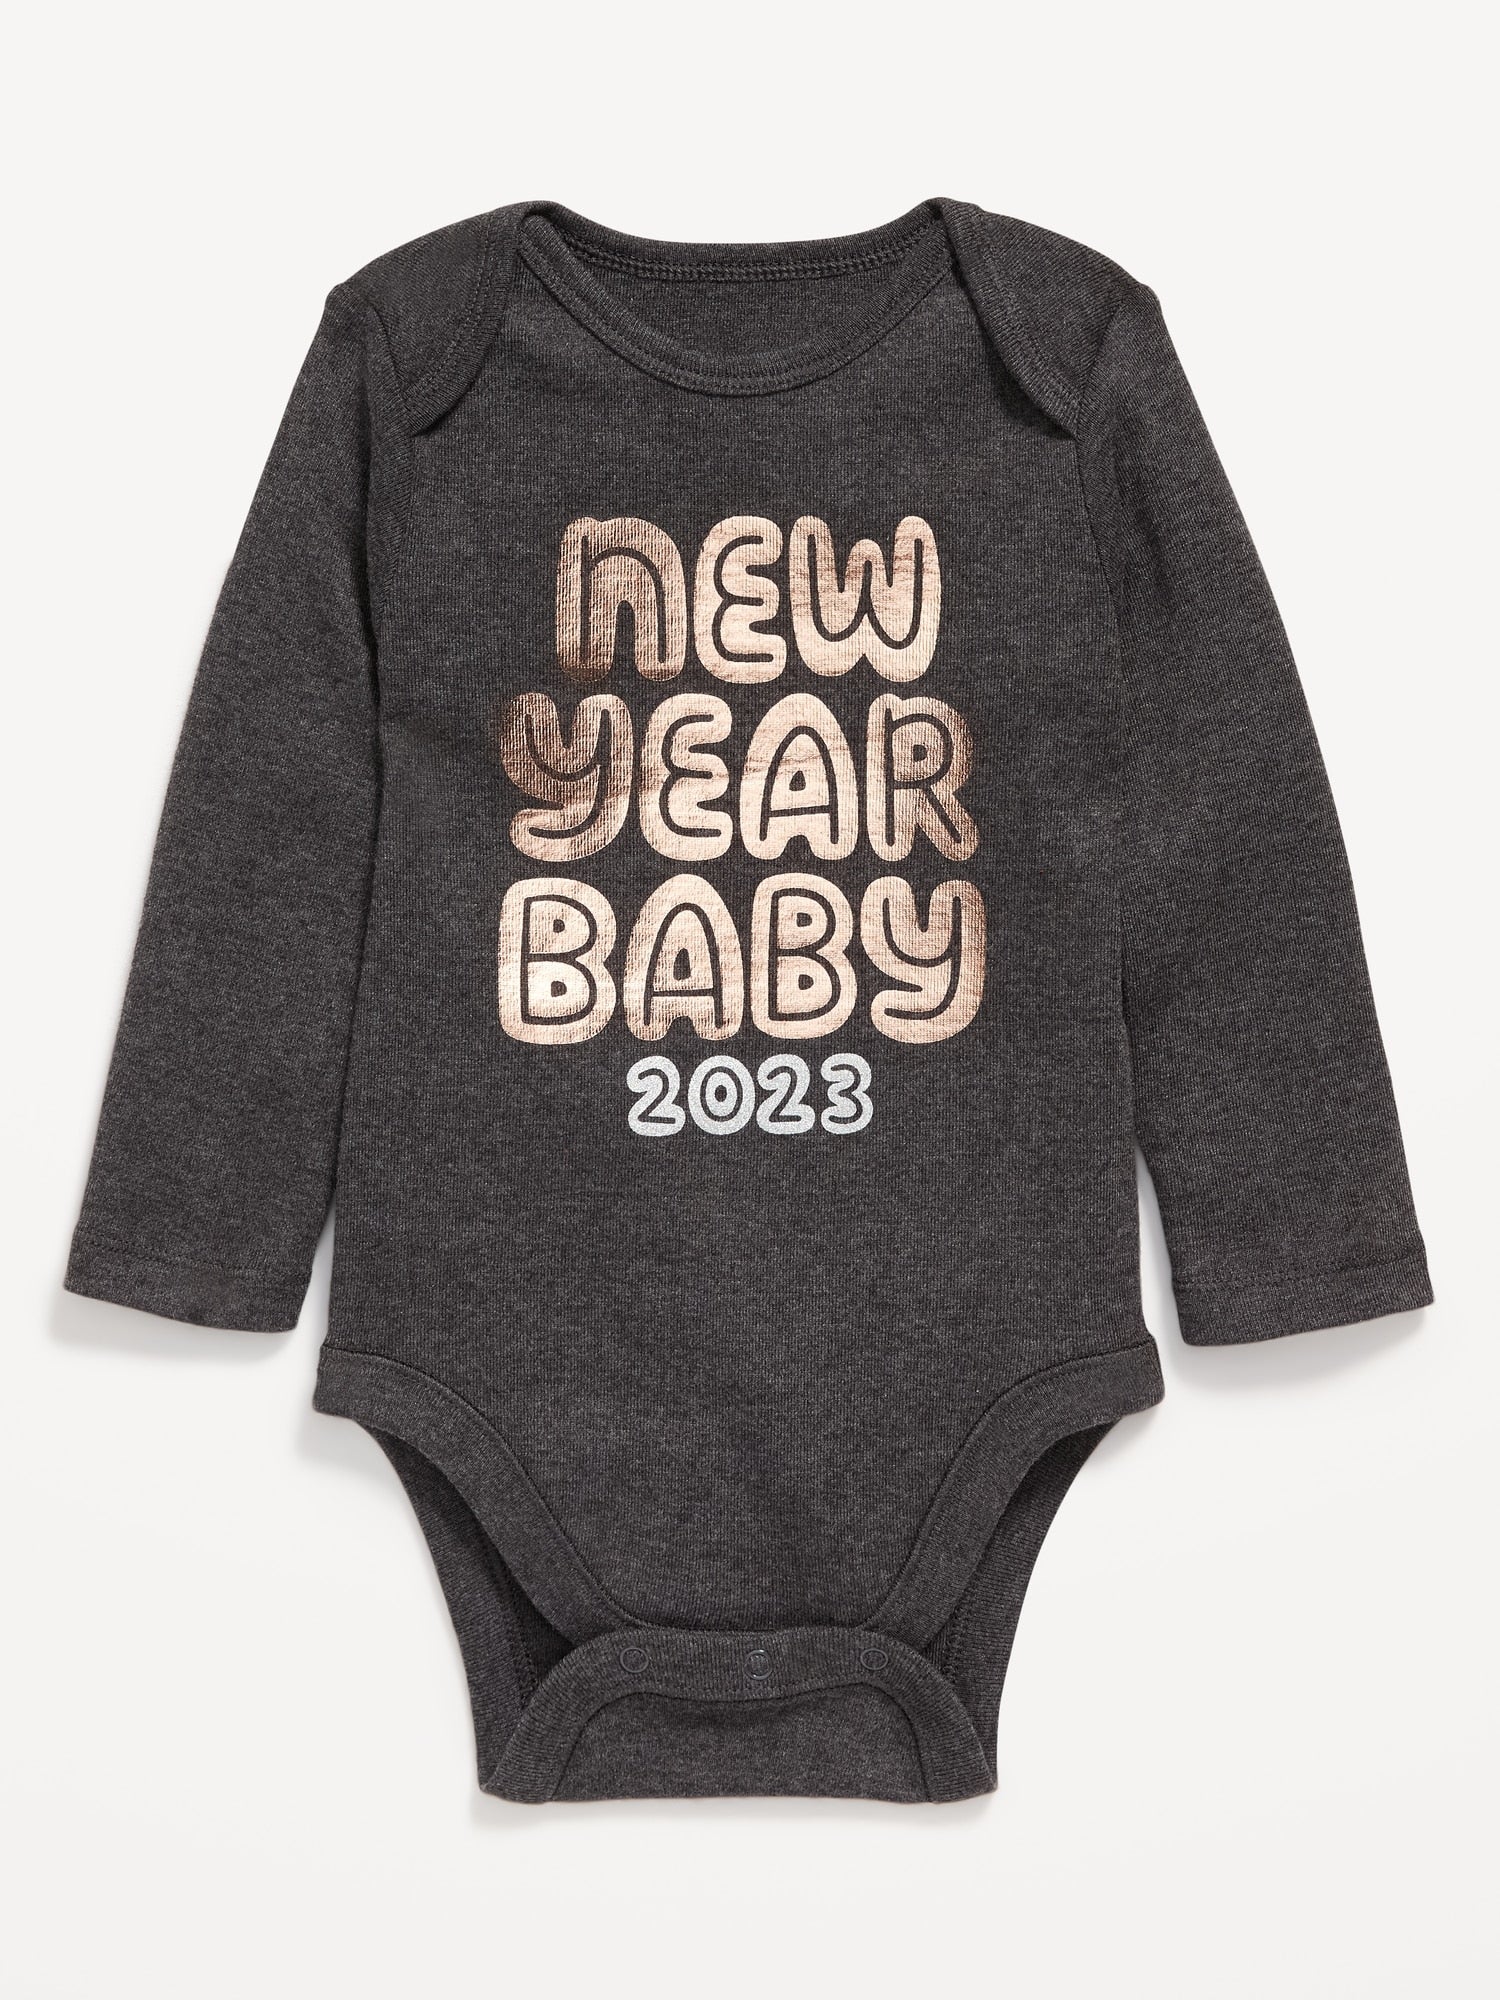 New Year Baby 2023